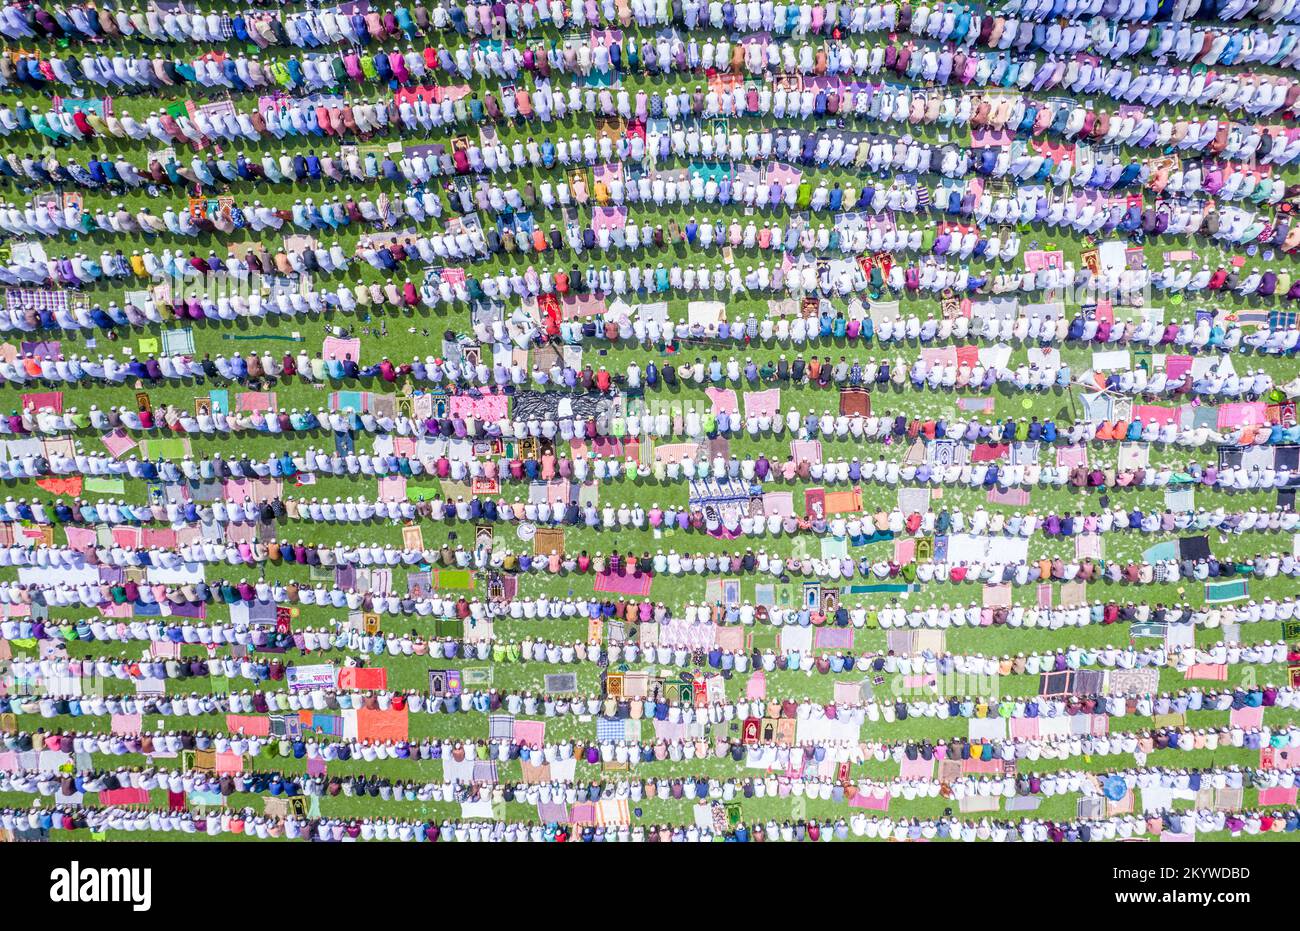 Barishal, Bangladesch. 2.. Dezember 2022. Etwa 50.000 bis 70.000 muslimische Menschen versammelten sich in Bels Park, Barishal City, Bangladesch, unter einem heißen, feuchten offenen Feld für ihre wöchentlichen Jummah-Gebete. Es gilt als eines der größten Jummah-Ereignisse in dieser Stadt, wo Tausende von Gläubigen ihr regelmäßiges Jummah-Gebet gemeinsam führen. (Bild: © Mustasinur Rahman Alvi/ZUMA Press Wire) Stockfoto